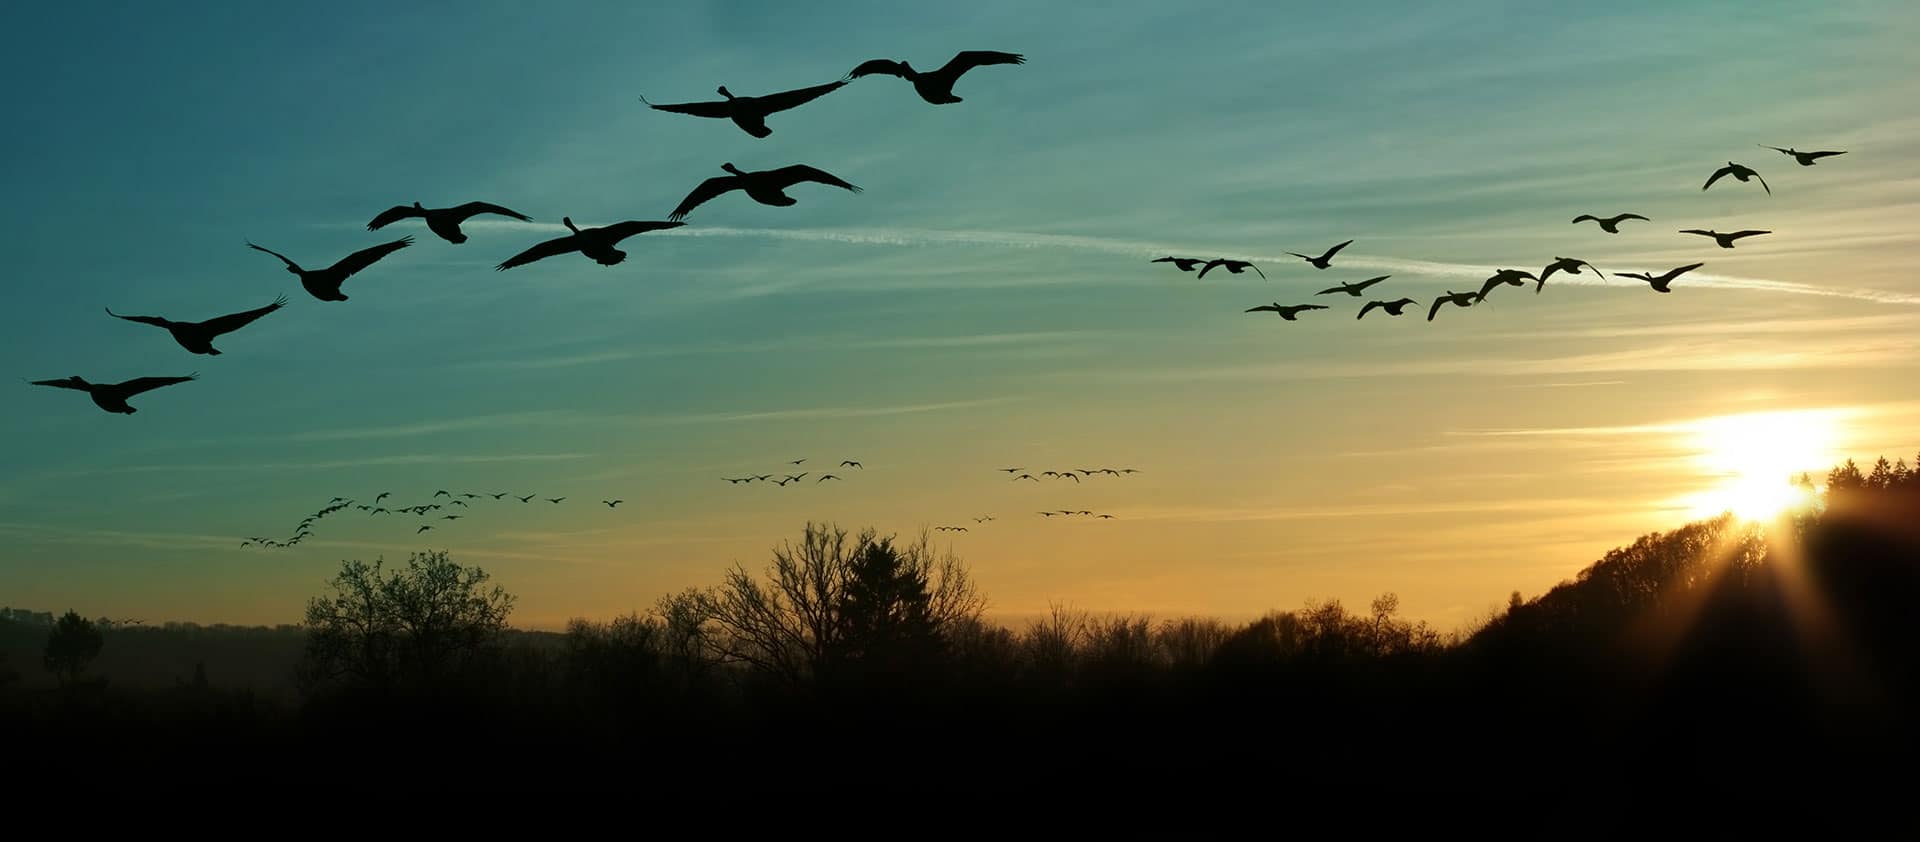 Birds in flight at sunset